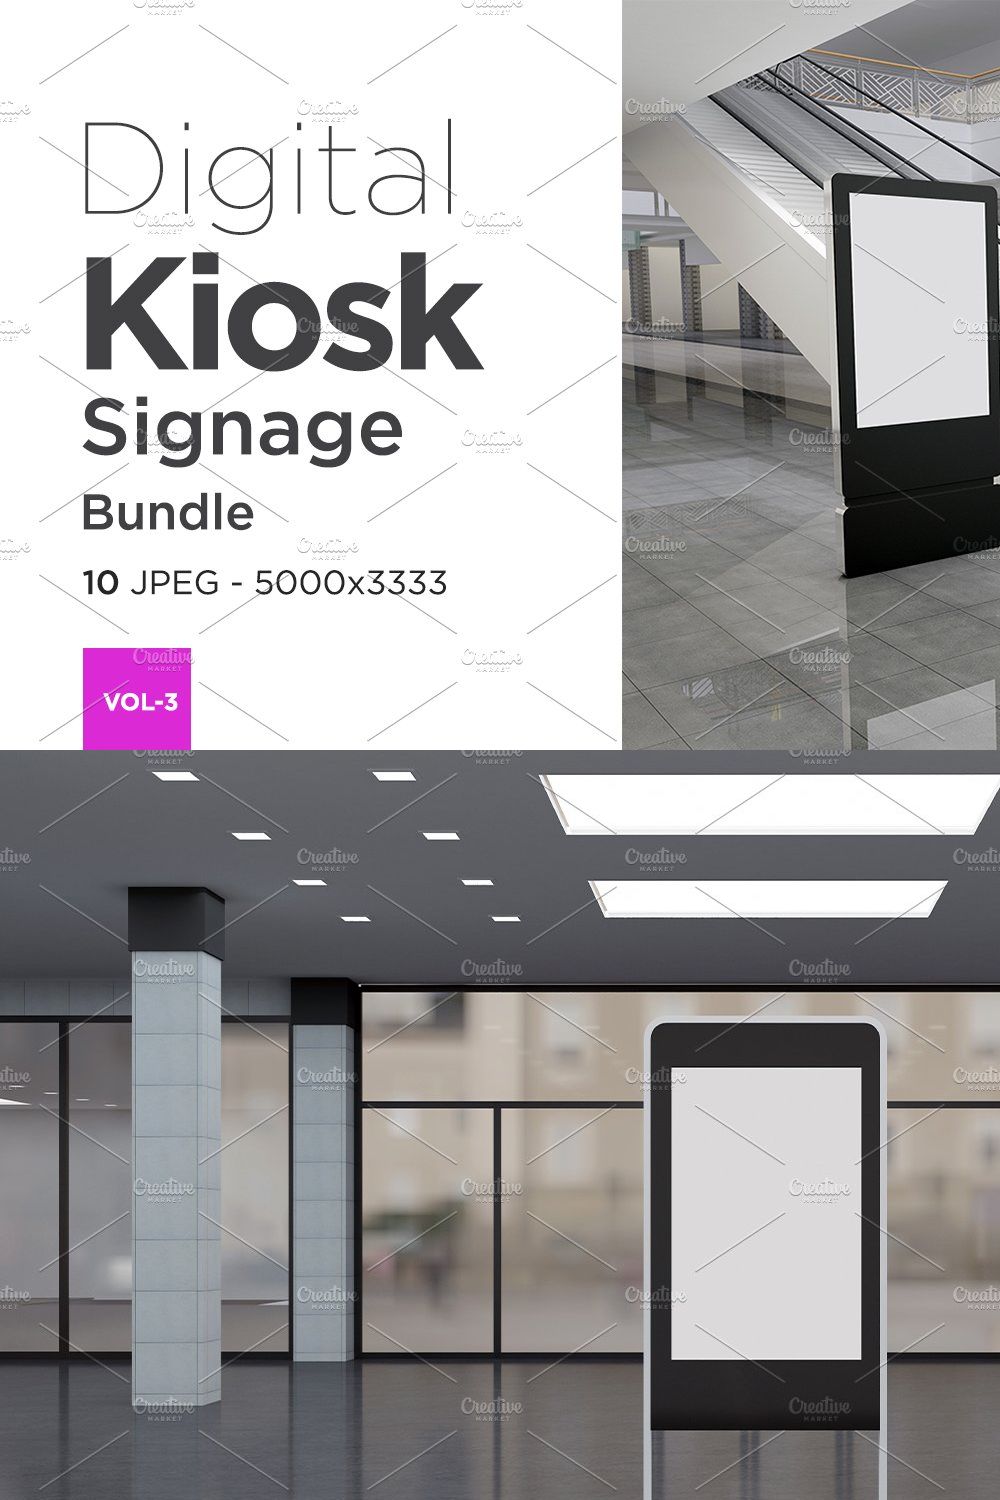 Kiosk Digital Sign Mockup Vol 3 pinterest preview image.